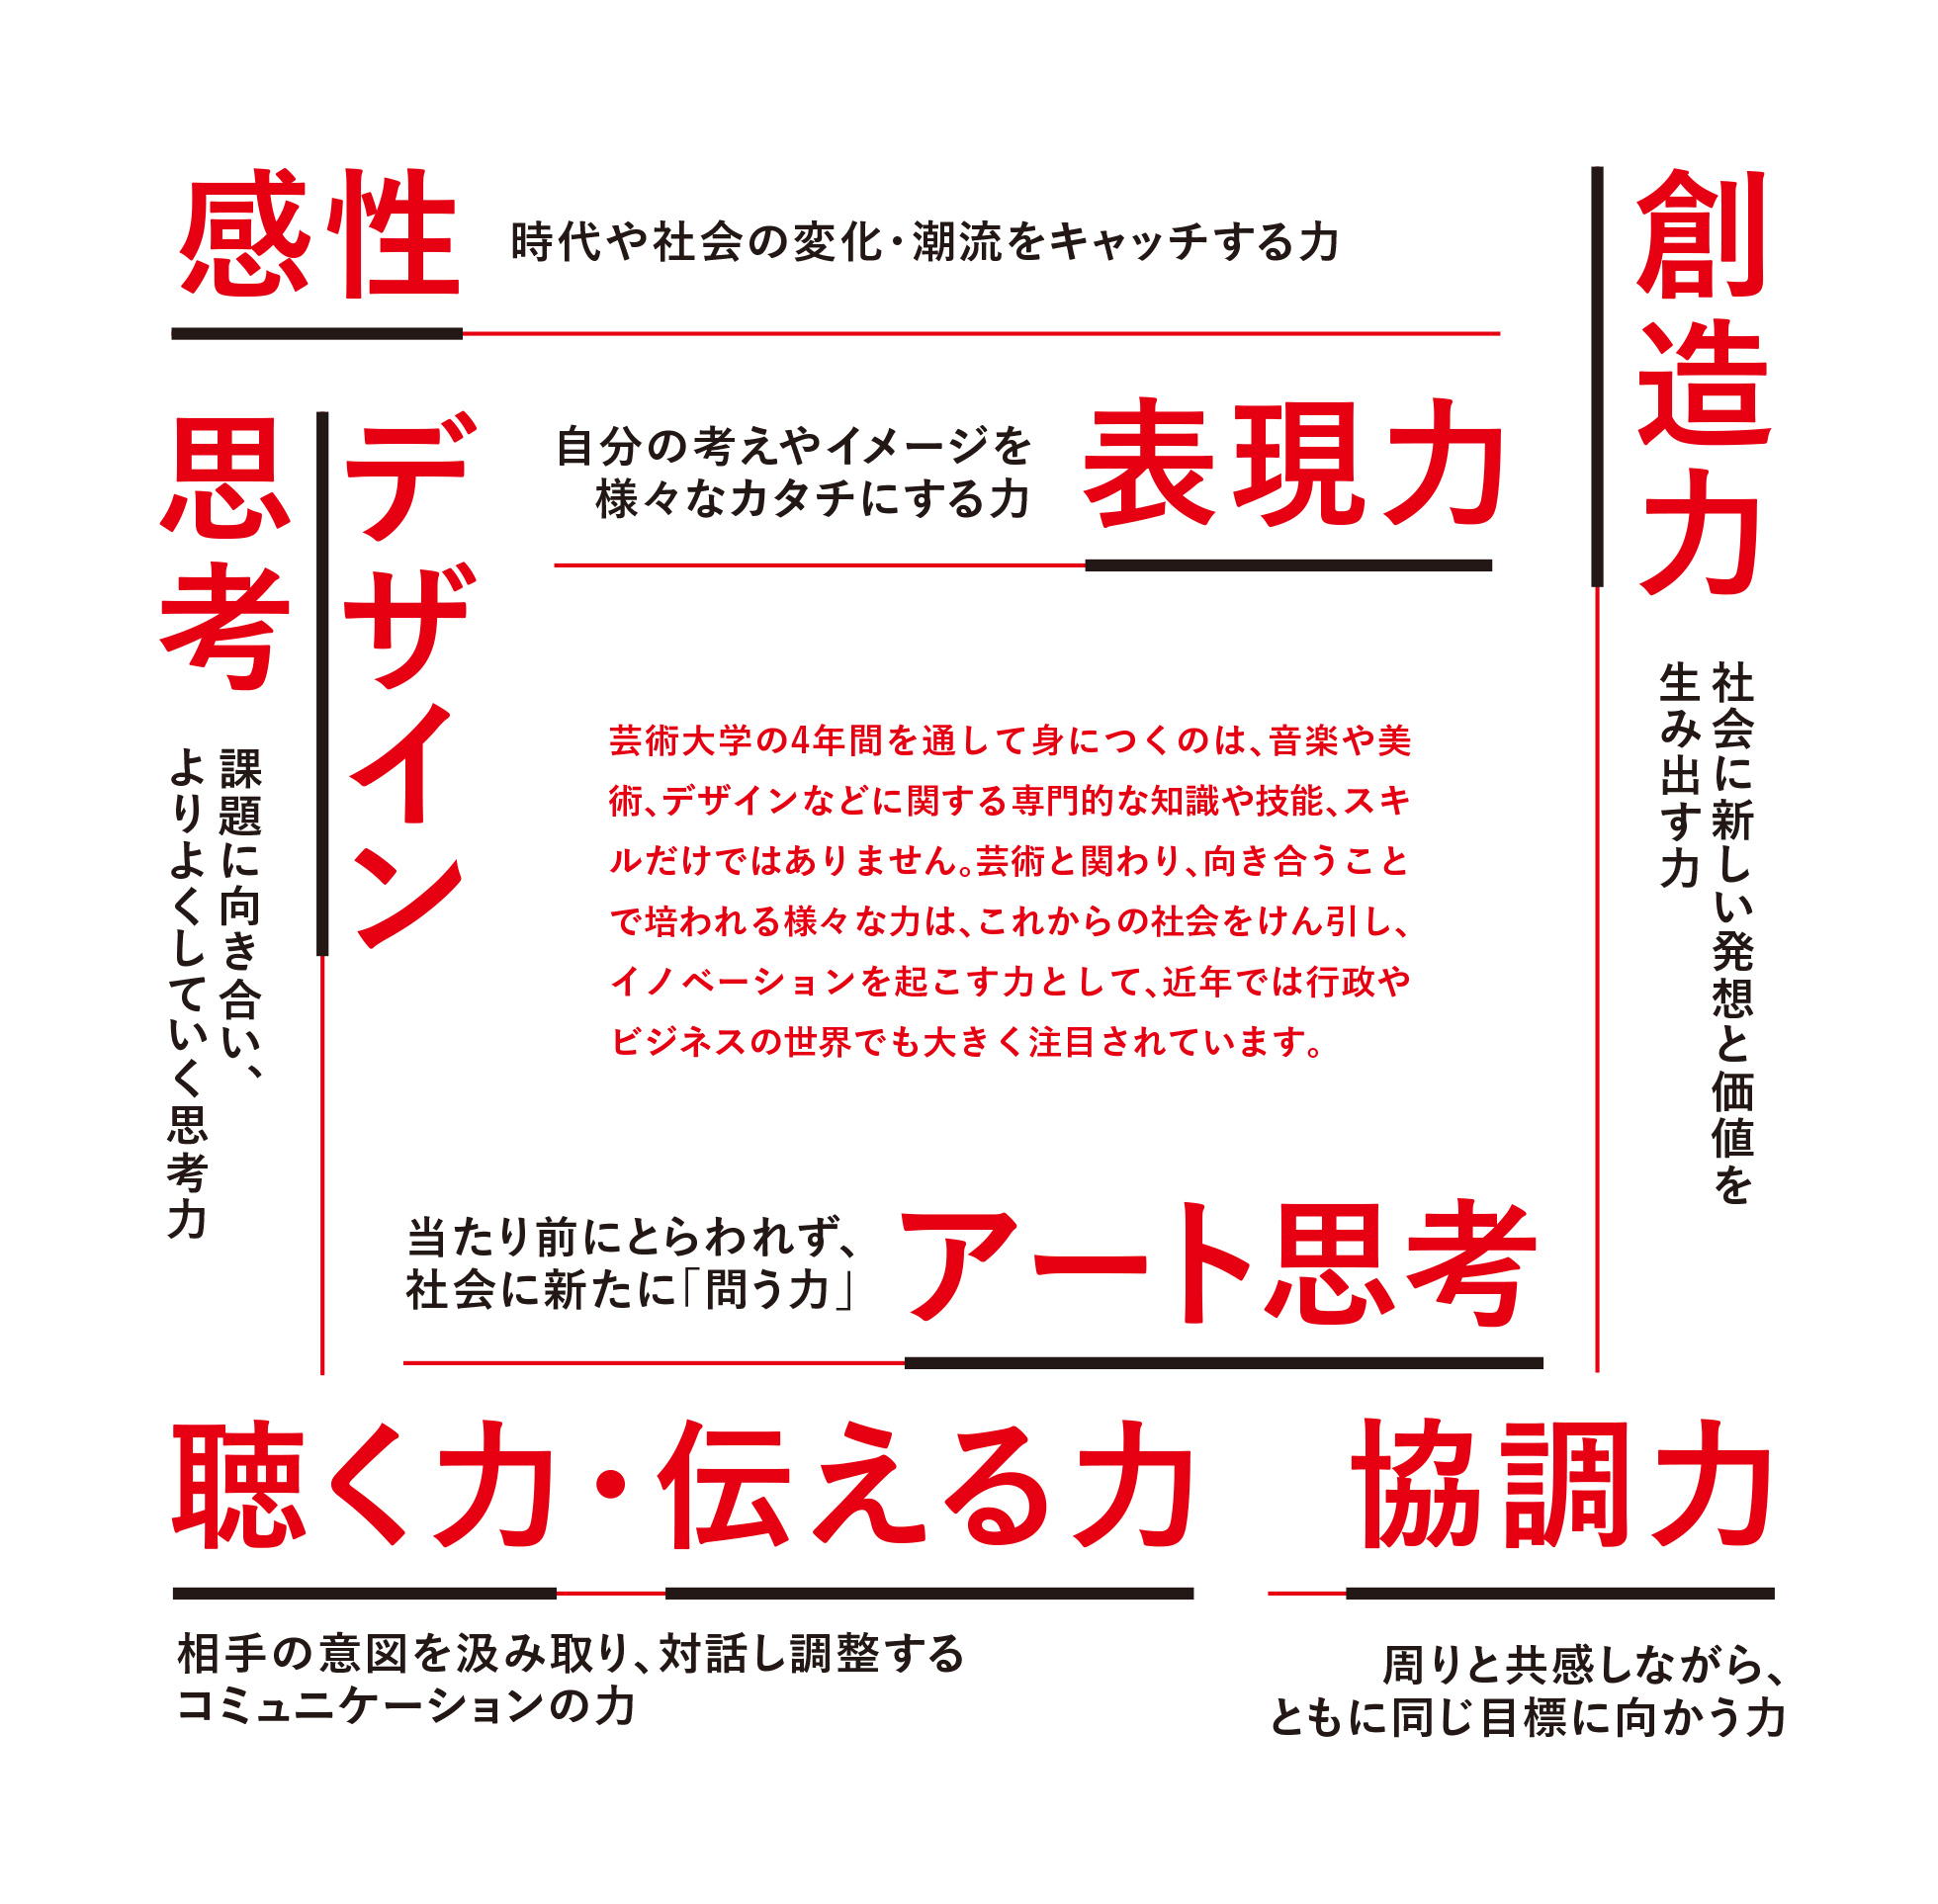 名古屋芸術大学での学びのイメージ